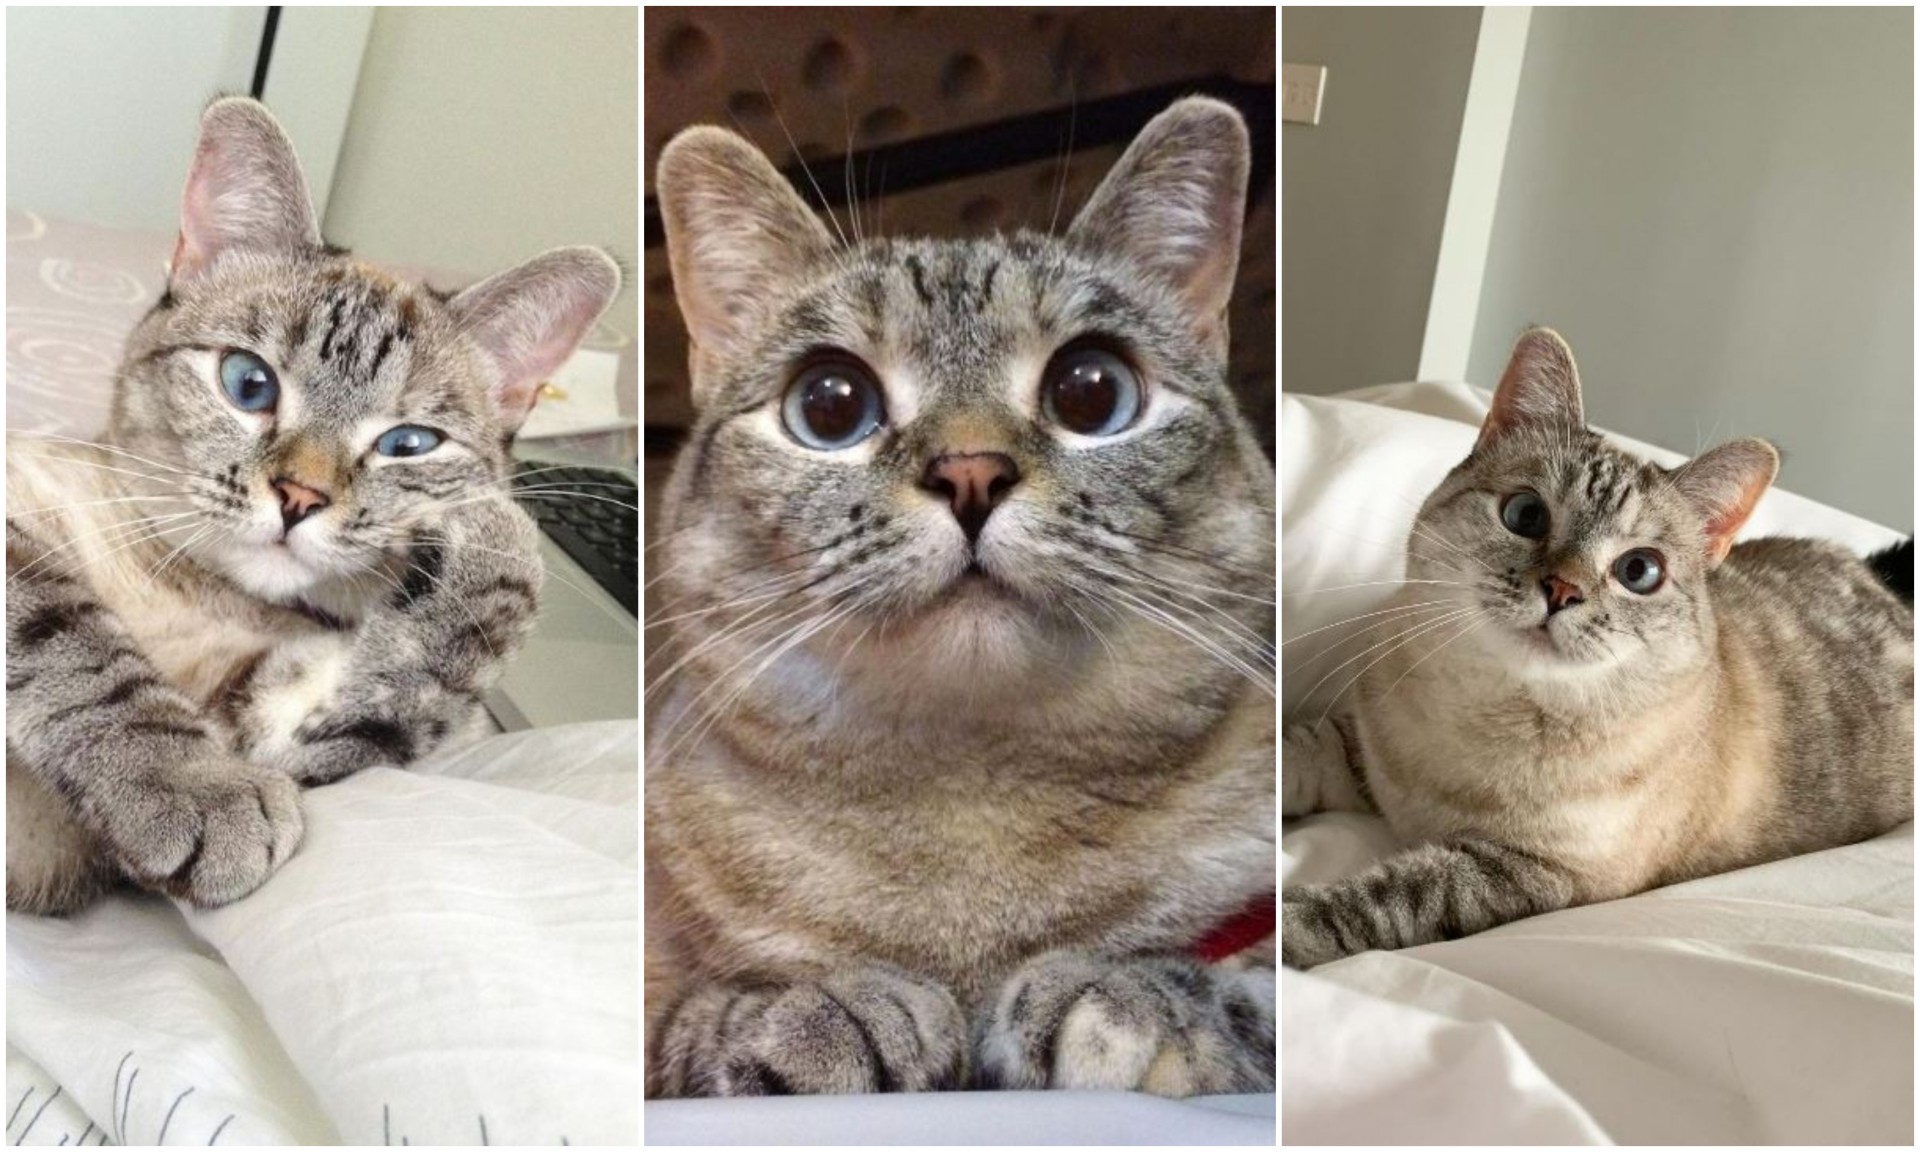 Најбогатата мачка на светот „тежи“ 100 милиони долари: Запознајте ја инфлуенсерката Нала (ФОТО)